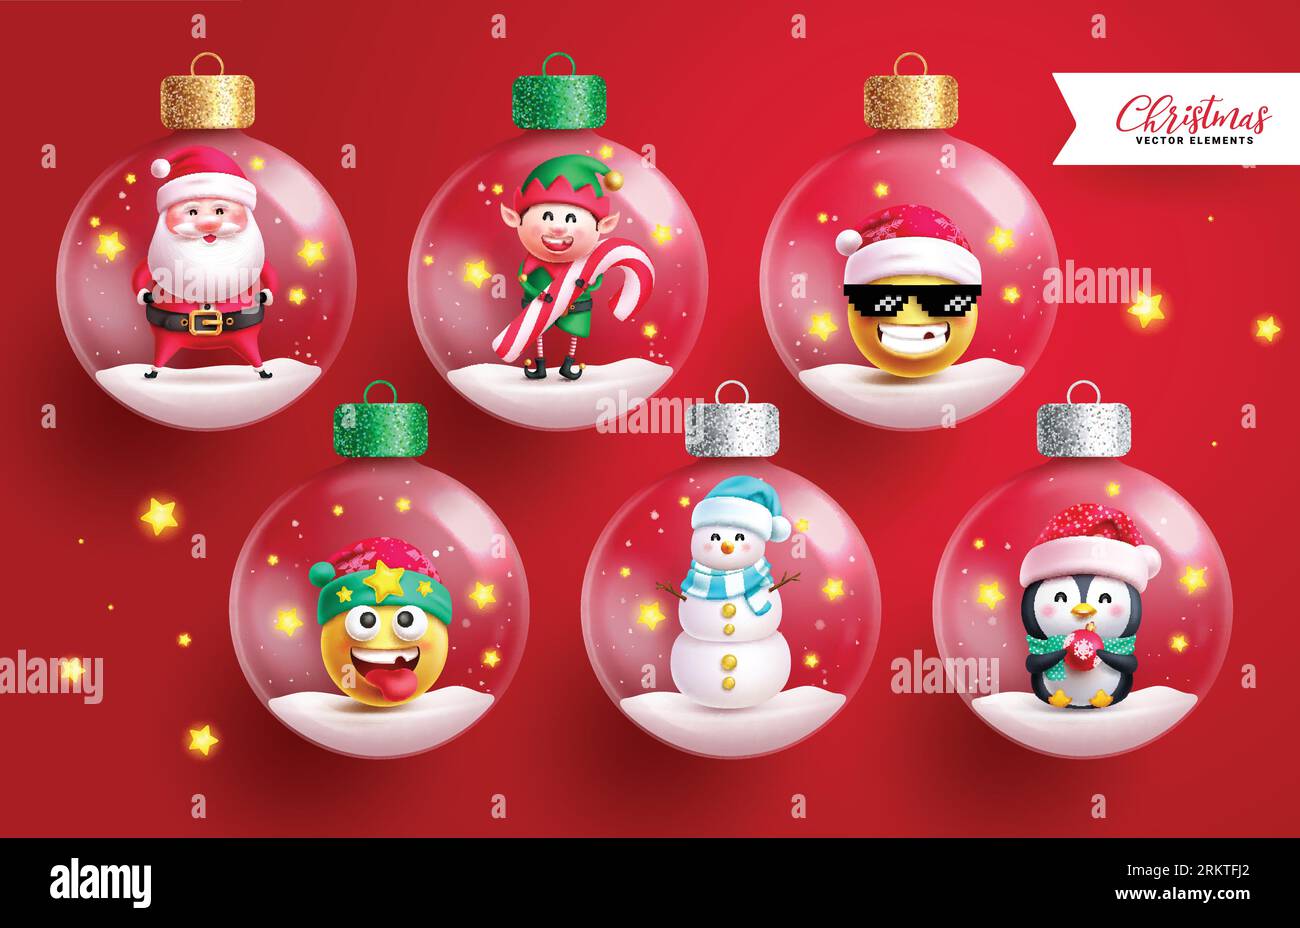 Weihnachtskristall Kugeln Vektor-Set-Design. Weihnachtsfiguren in Glaskugeln, Kugel, Kugel, transparente Elemente auf magischem rotem Hintergrund. Vektor Stock Vektor